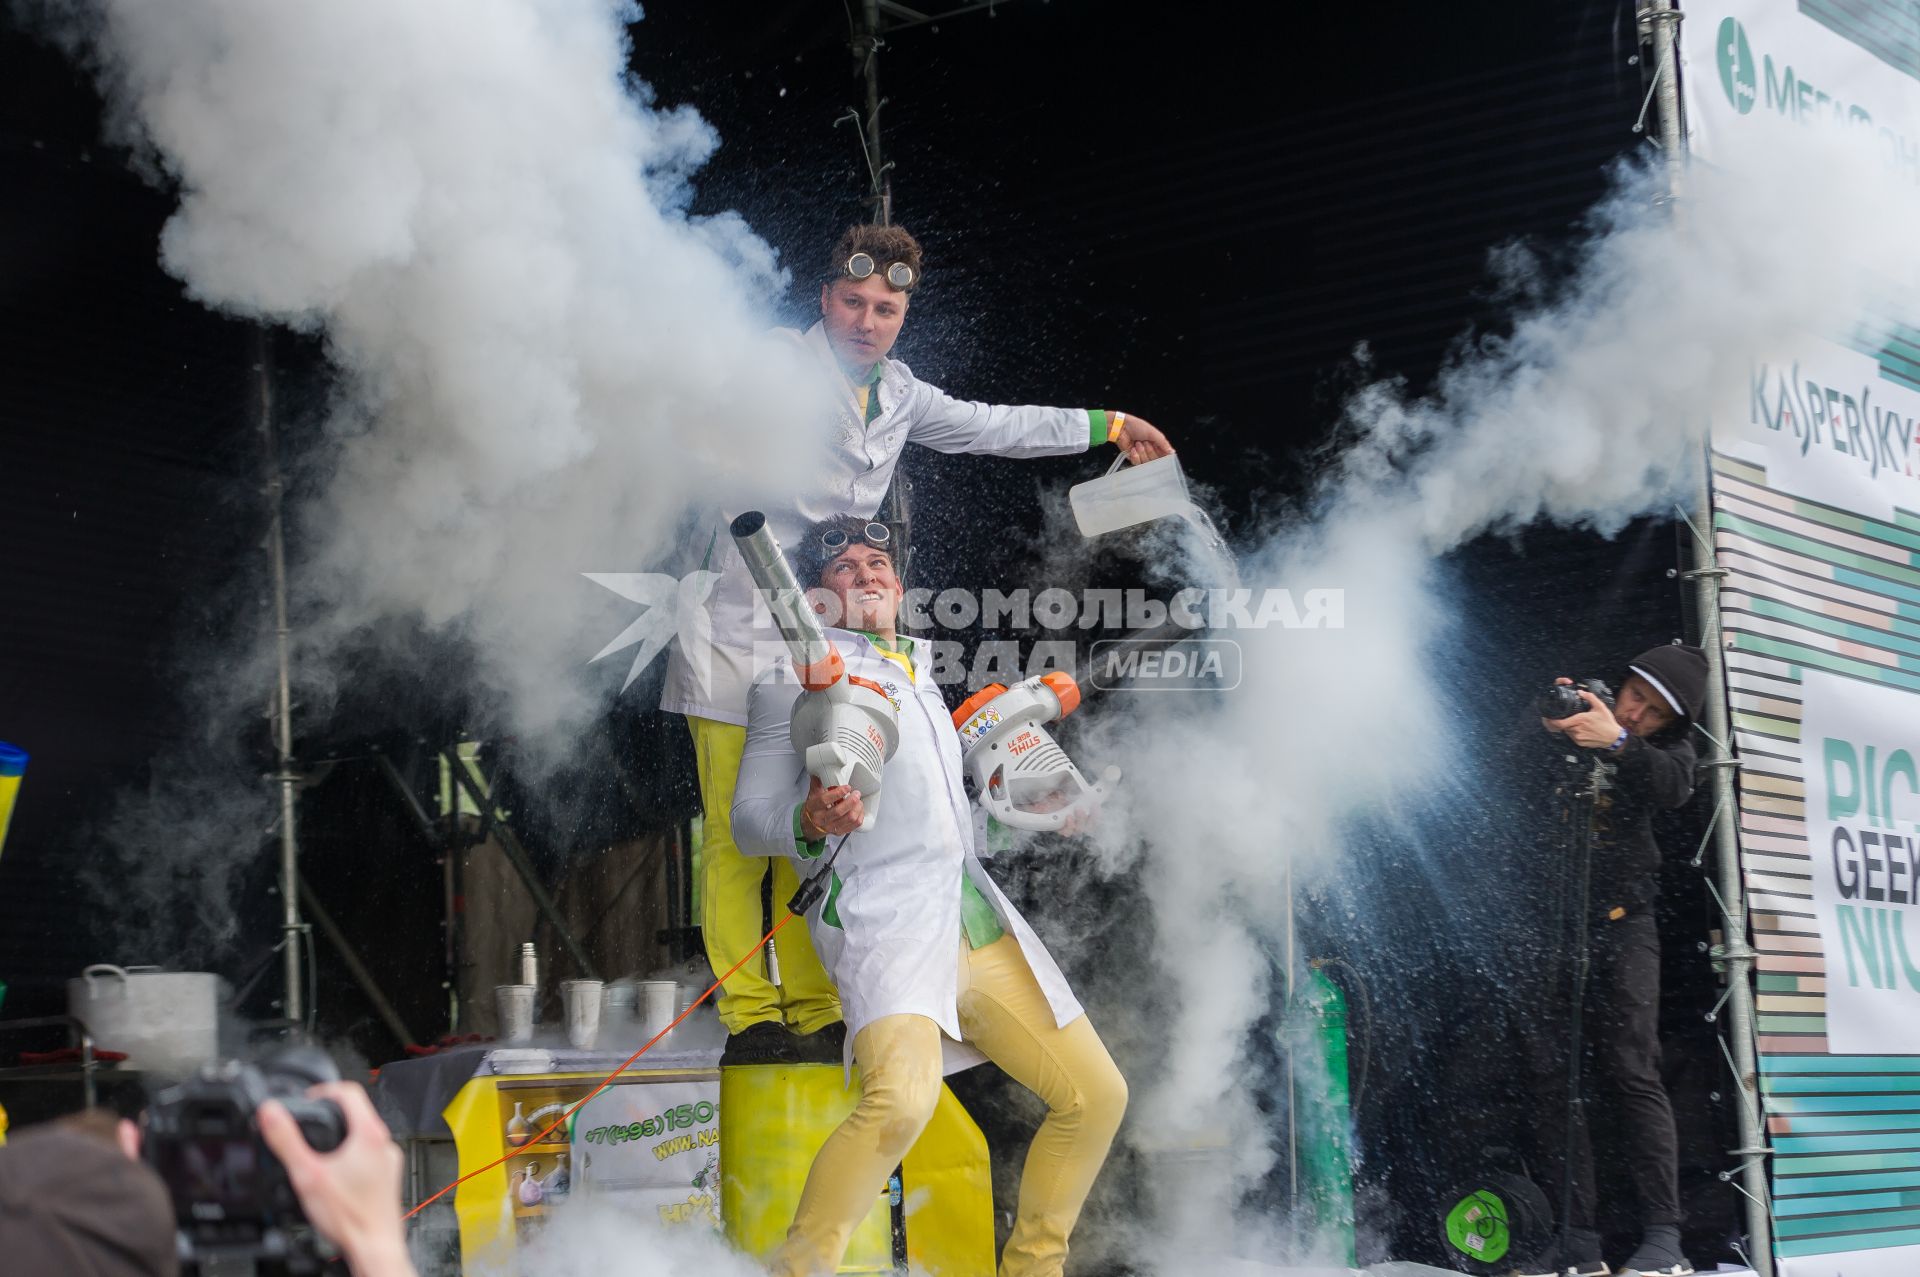 Санкт-Петербург. Опыт с жидким азотом во время научно-популярного  фестиваля Geek Picnic в Пулковском парке.